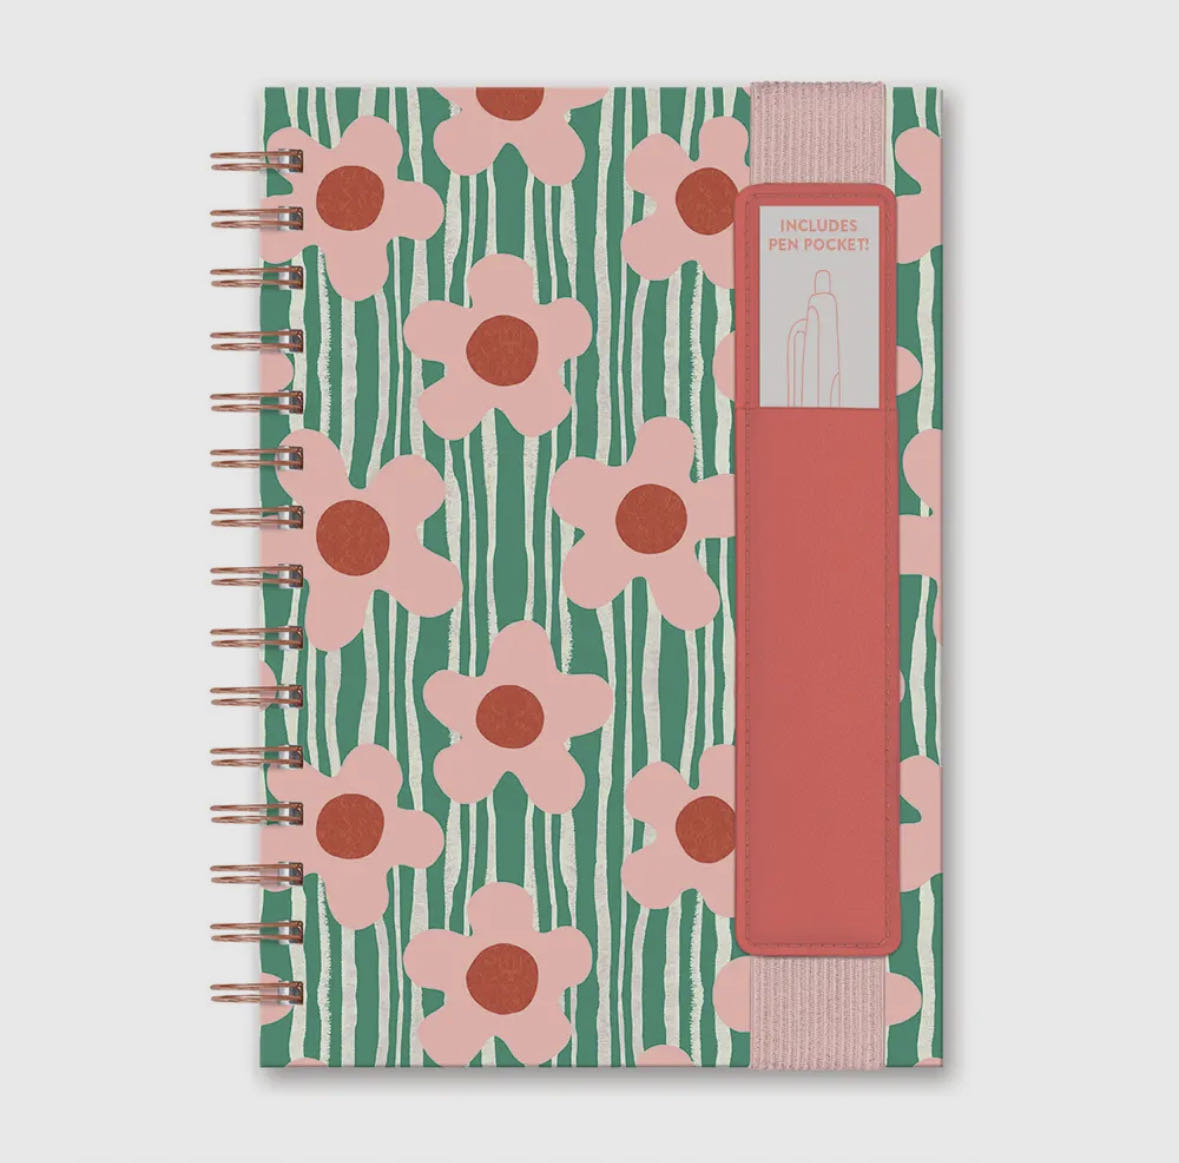 oliver notebook with pen pocket